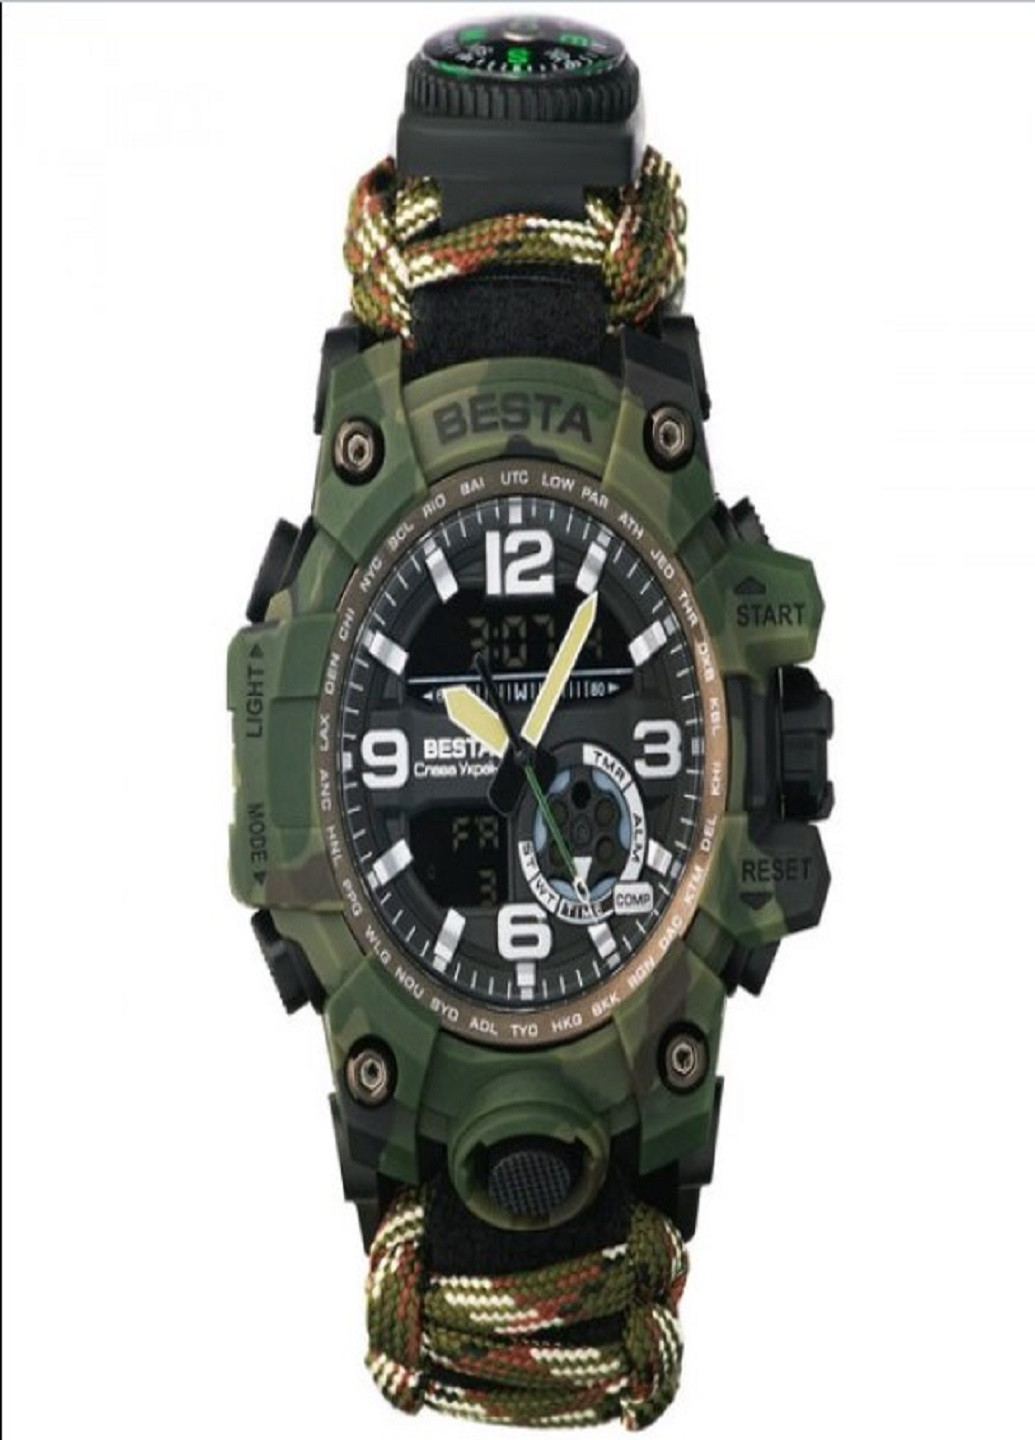 Чоловічий наручний годинник Military з компасом для виживання 7 в 1 мілітарі Besta (258721952)